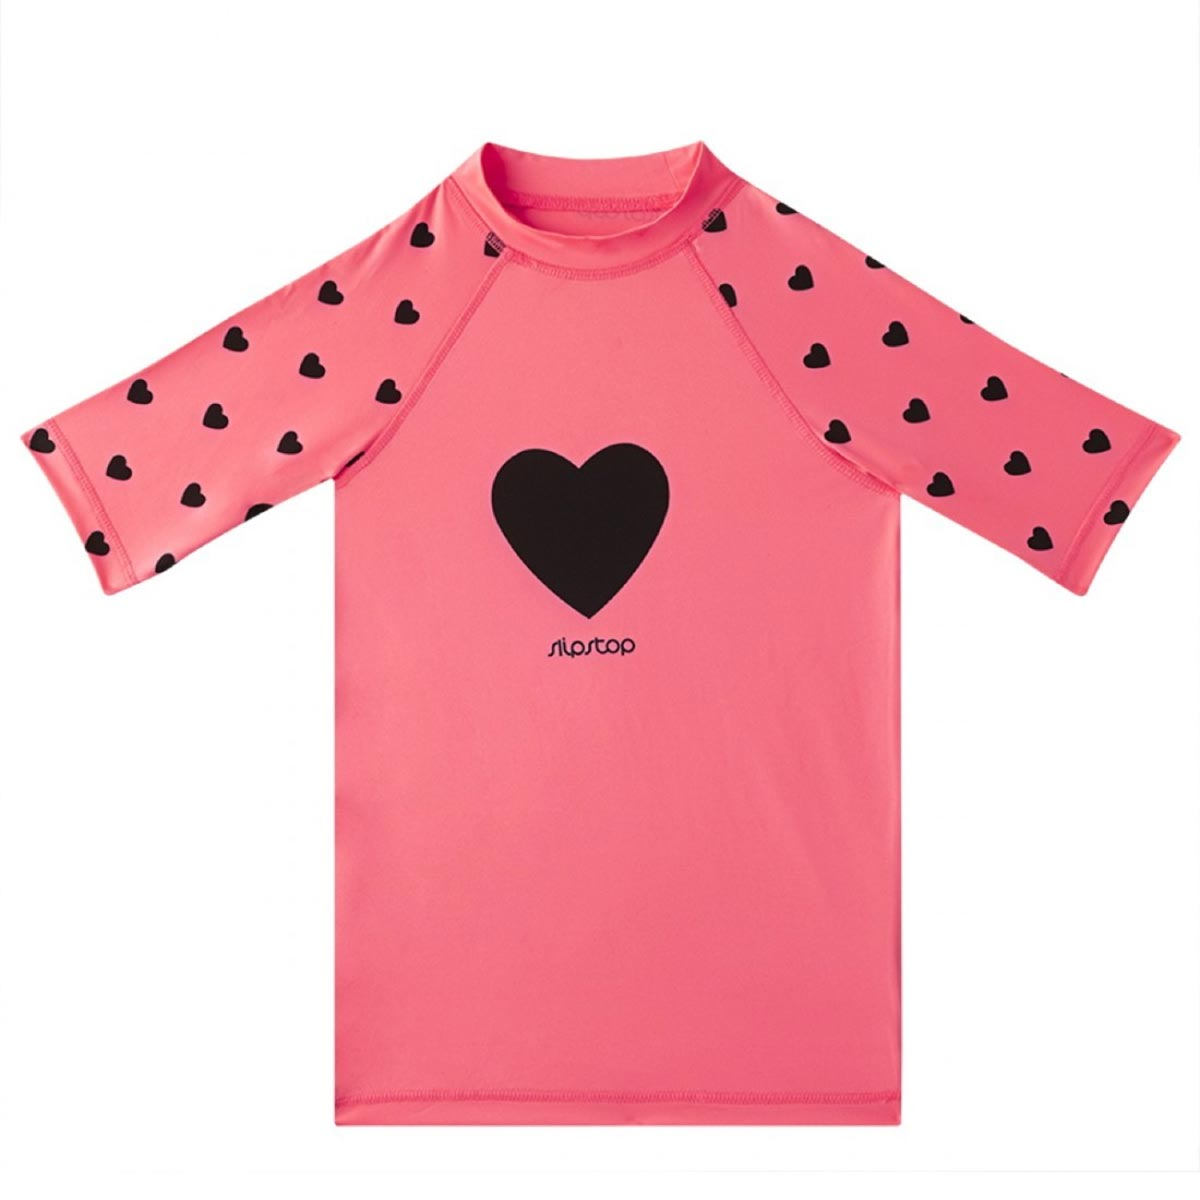 Παιδική Μπλούζα Με Αντηλιακή Προστασία Slipstop Neon Hearts 2-3 2-3